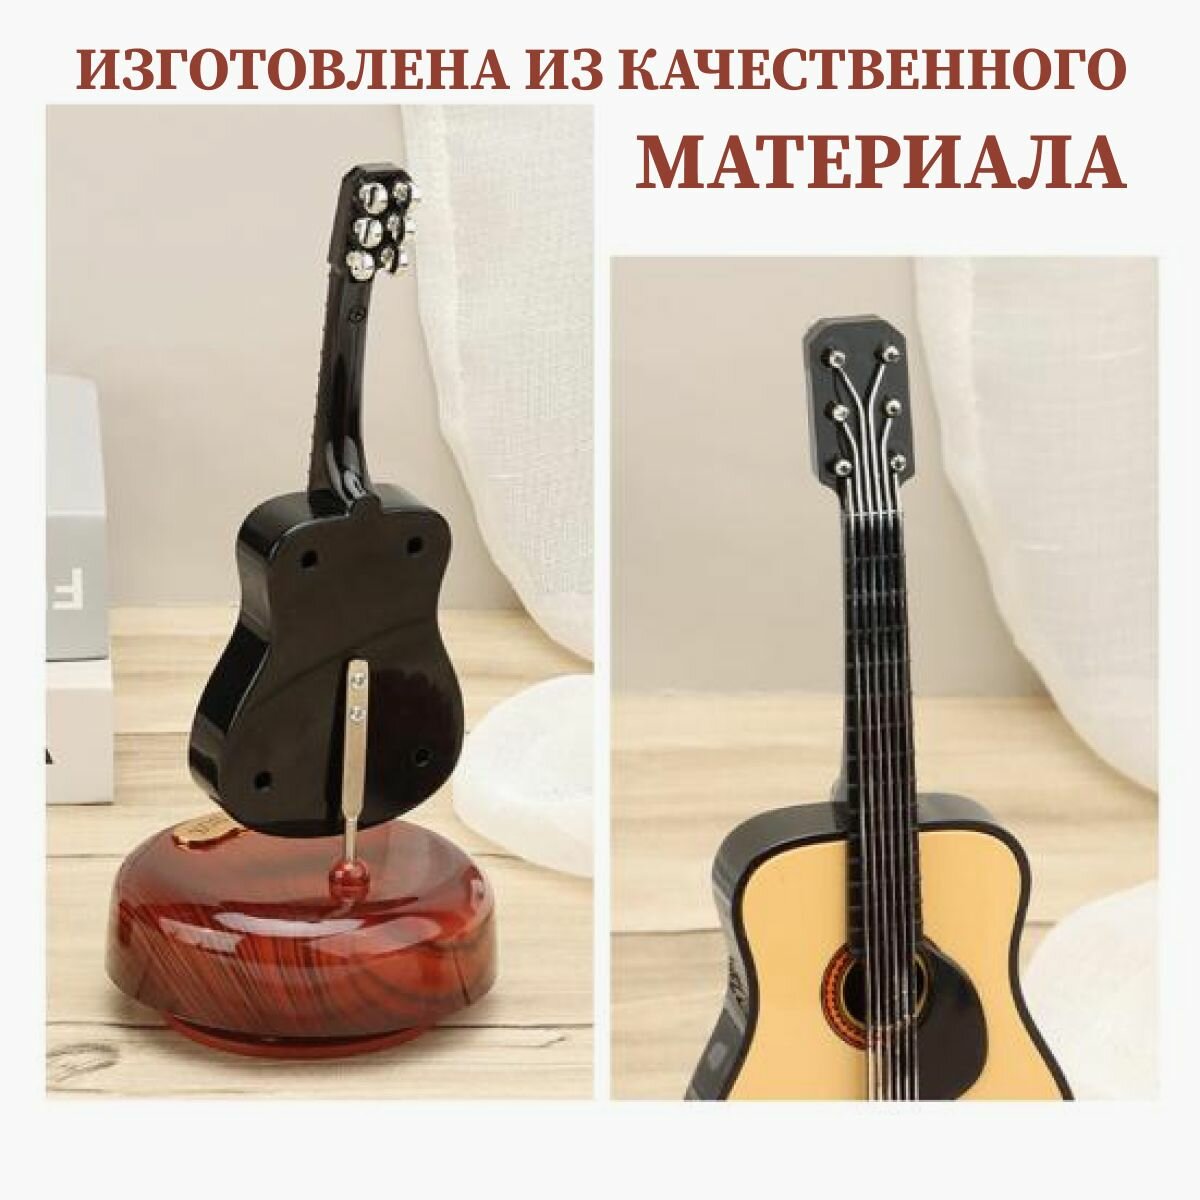 Музыкальная фигурка в форме гитары. Интерьерная статуэтка. Подарок музыканту или Сувенир